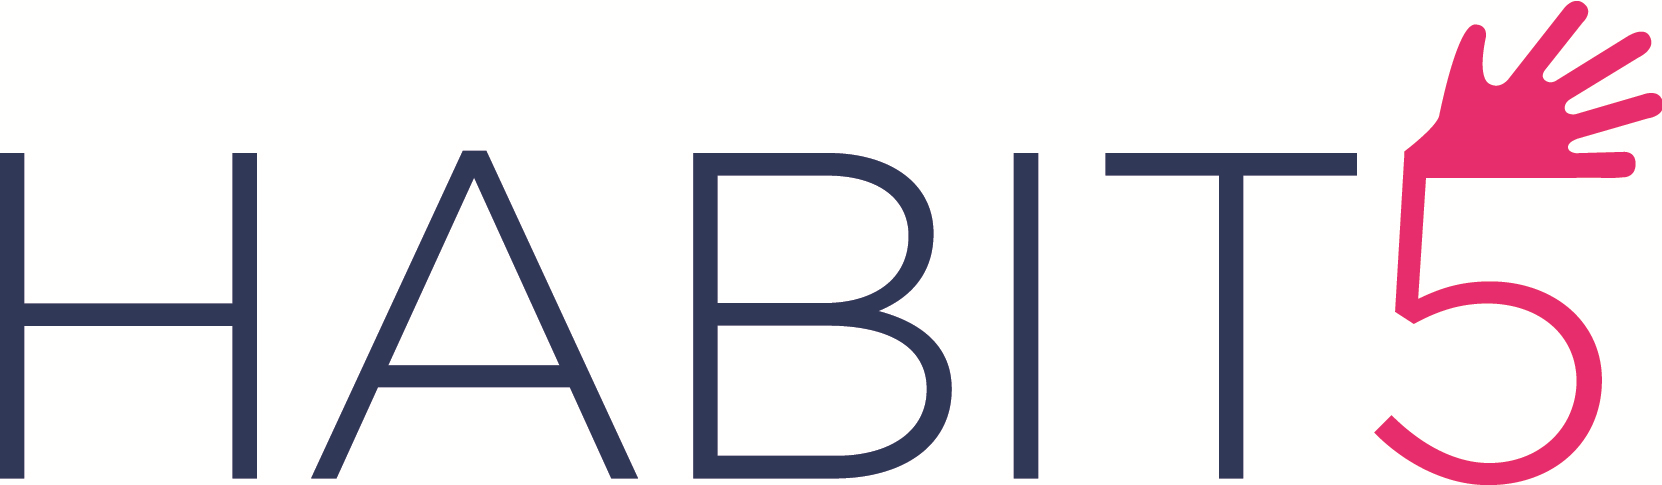 habit5_logo